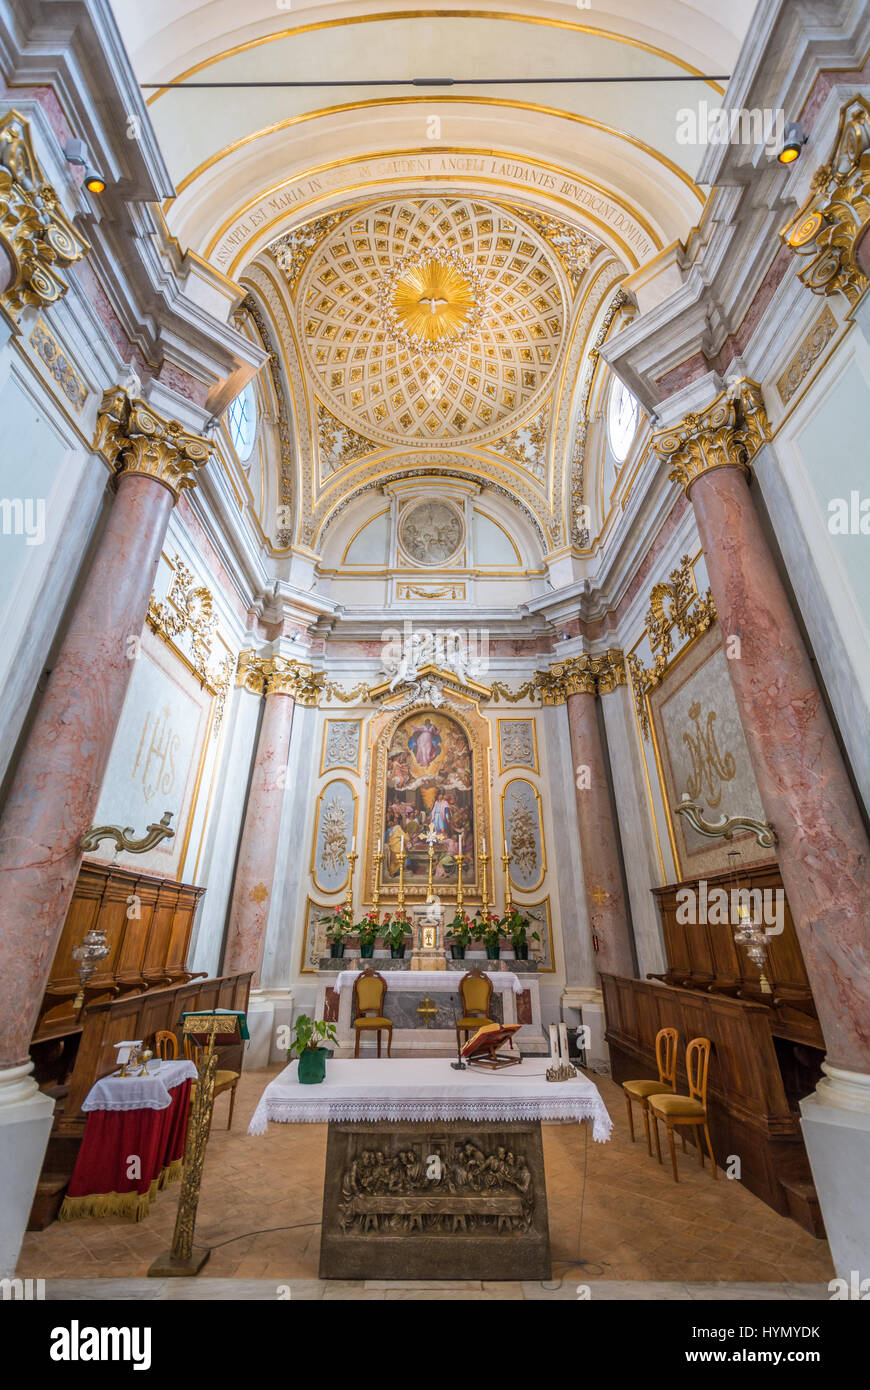 Collégiale Saint Mary, Buckland, Province de Rome, Latium (Italie) Banque D'Images